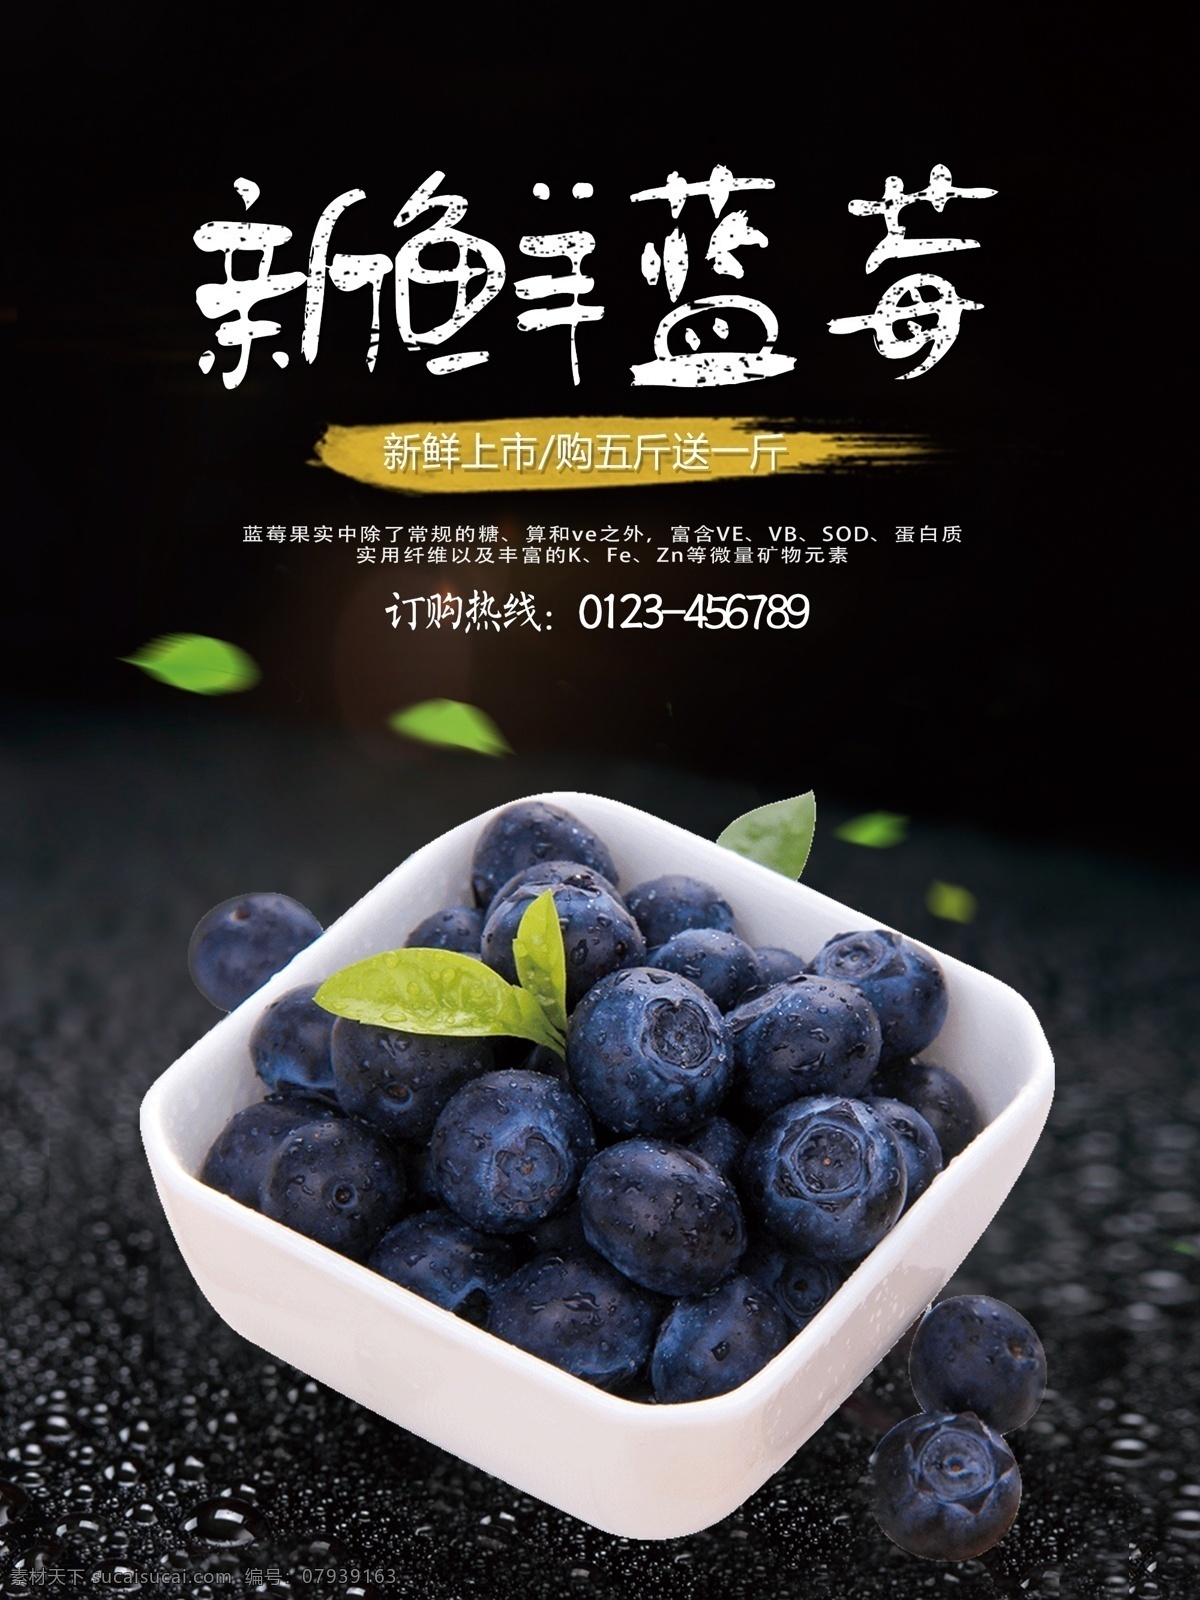 新鲜 水果 蓝莓 促销 宣传海报 新鲜水果 新鲜蓝莓 有机蓝莓 采摘 水果海报 水果促销 进口 绿色食物 营养健康 清新 简单 健康